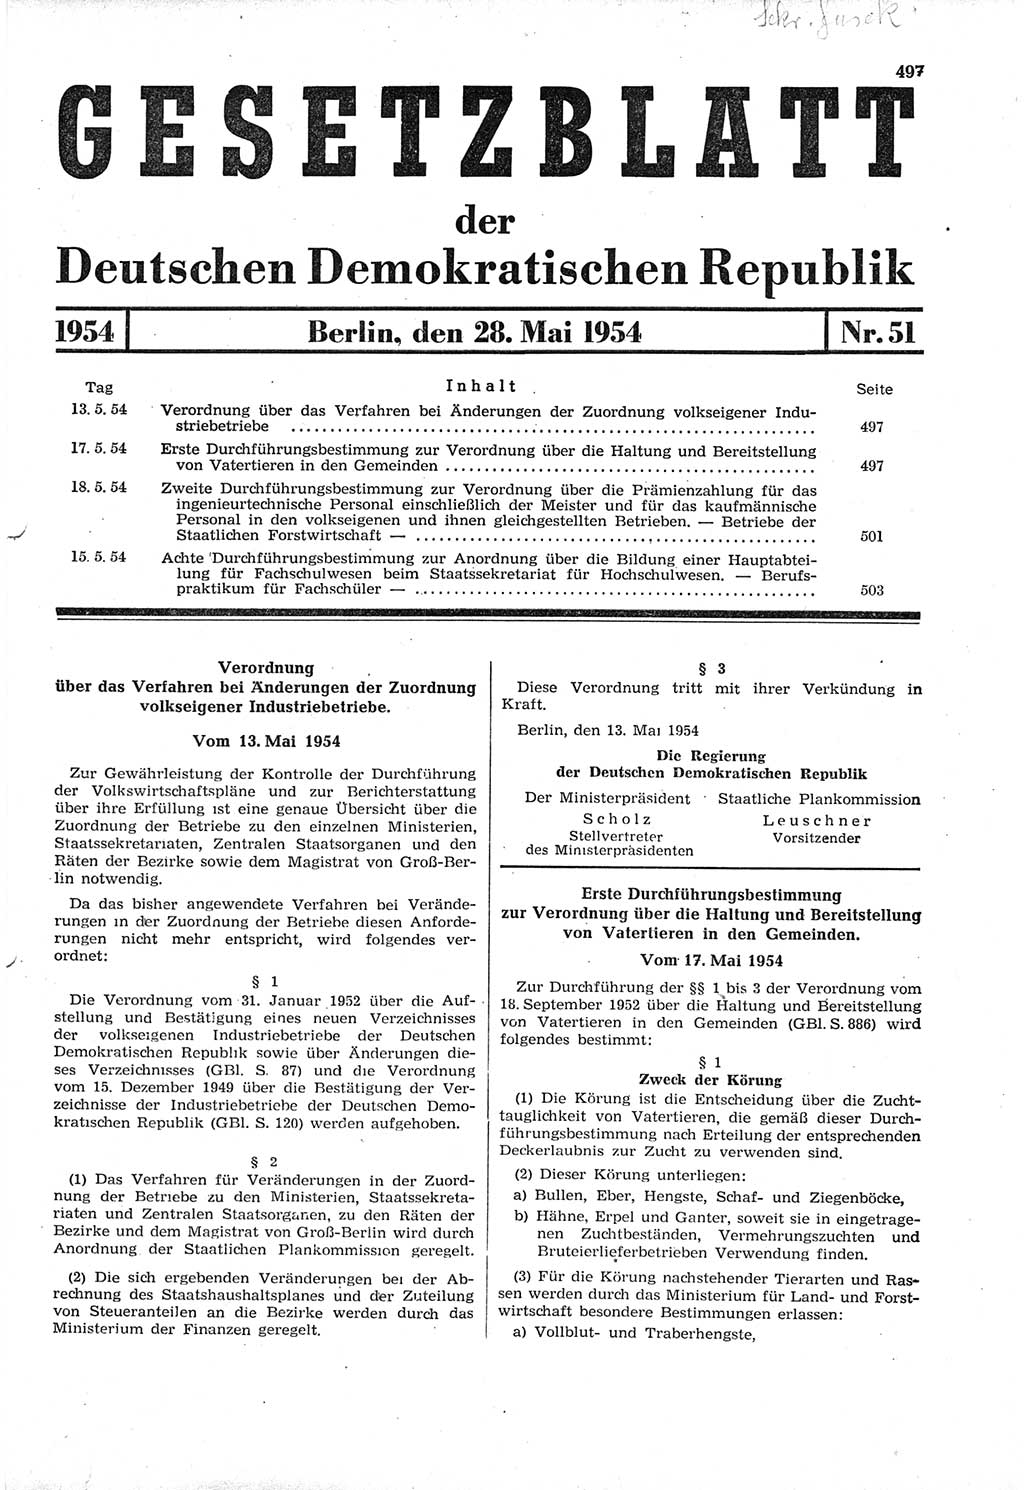 Gesetzblatt (GBl.) der Deutschen Demokratischen Republik (DDR) 1954, Seite 497 (GBl. DDR 1954, S. 497)